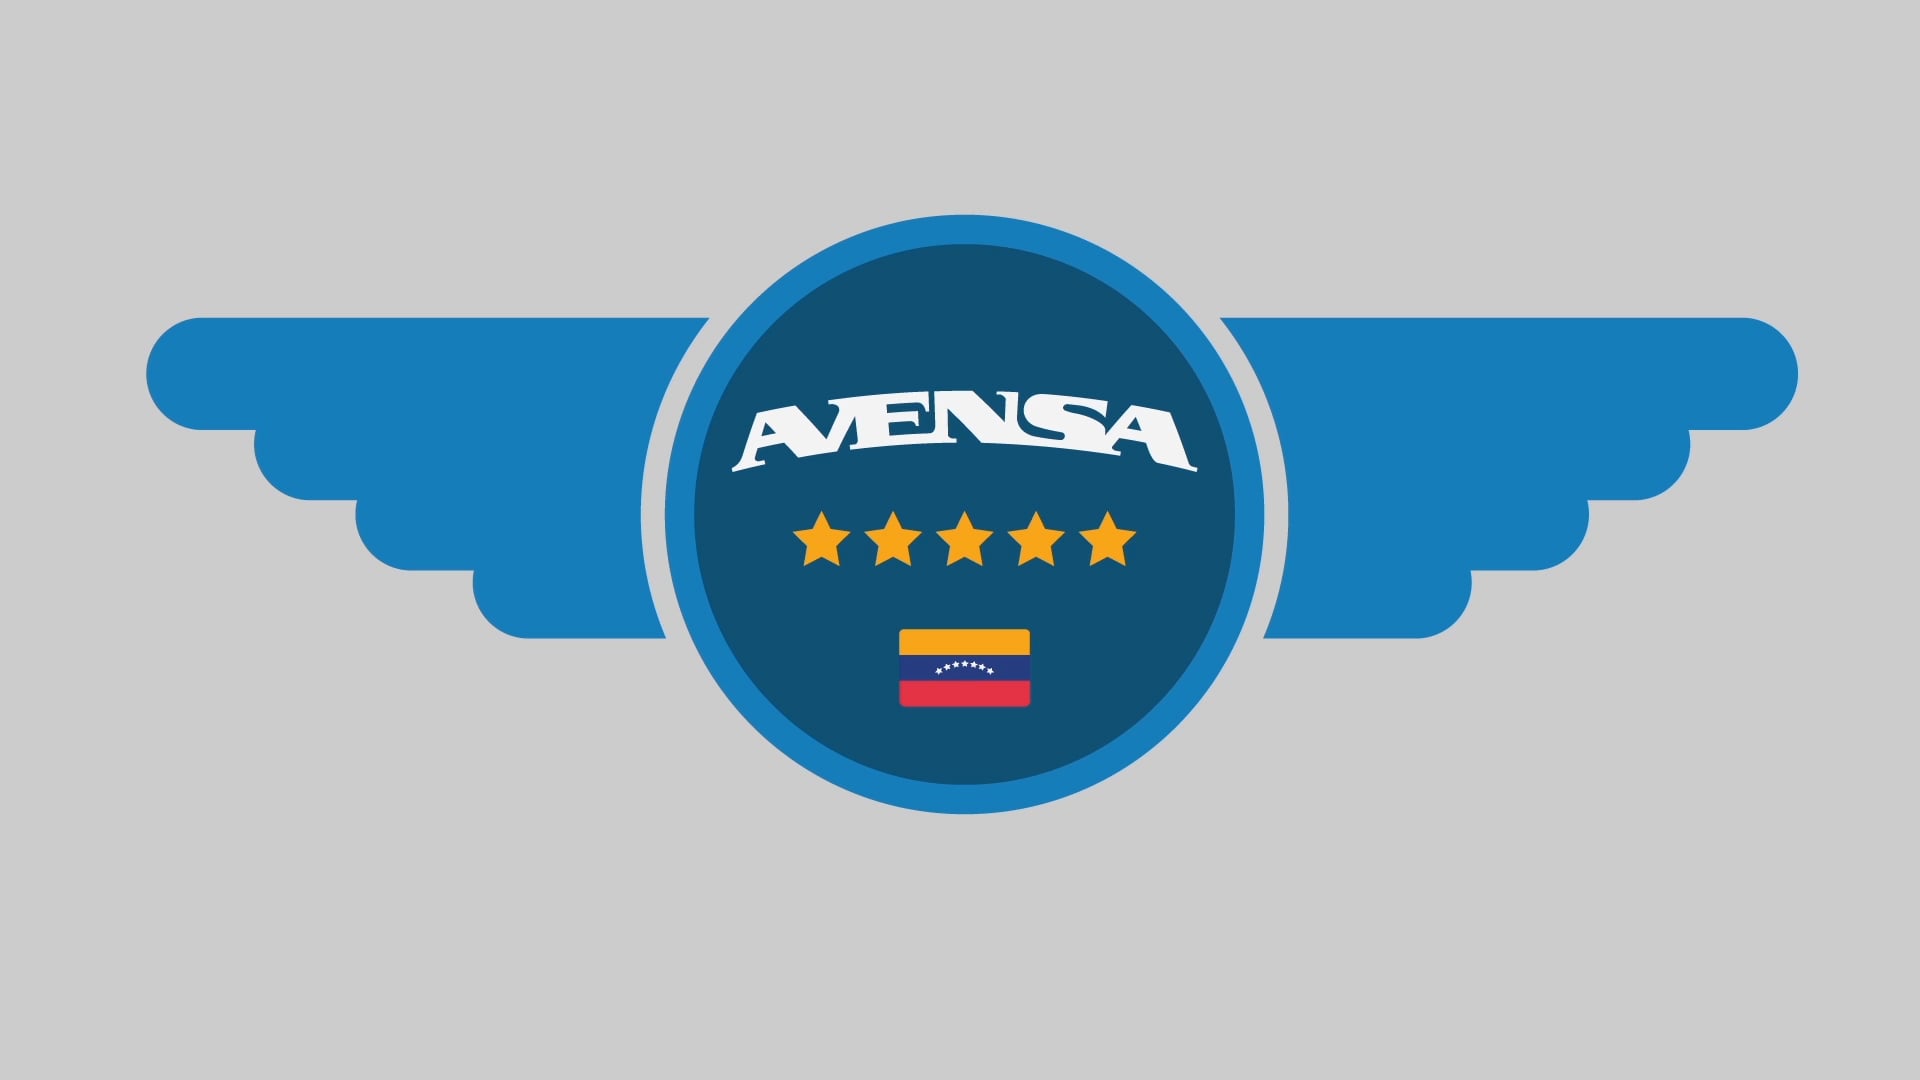 AVENSA-In Flight Safety (VO English)